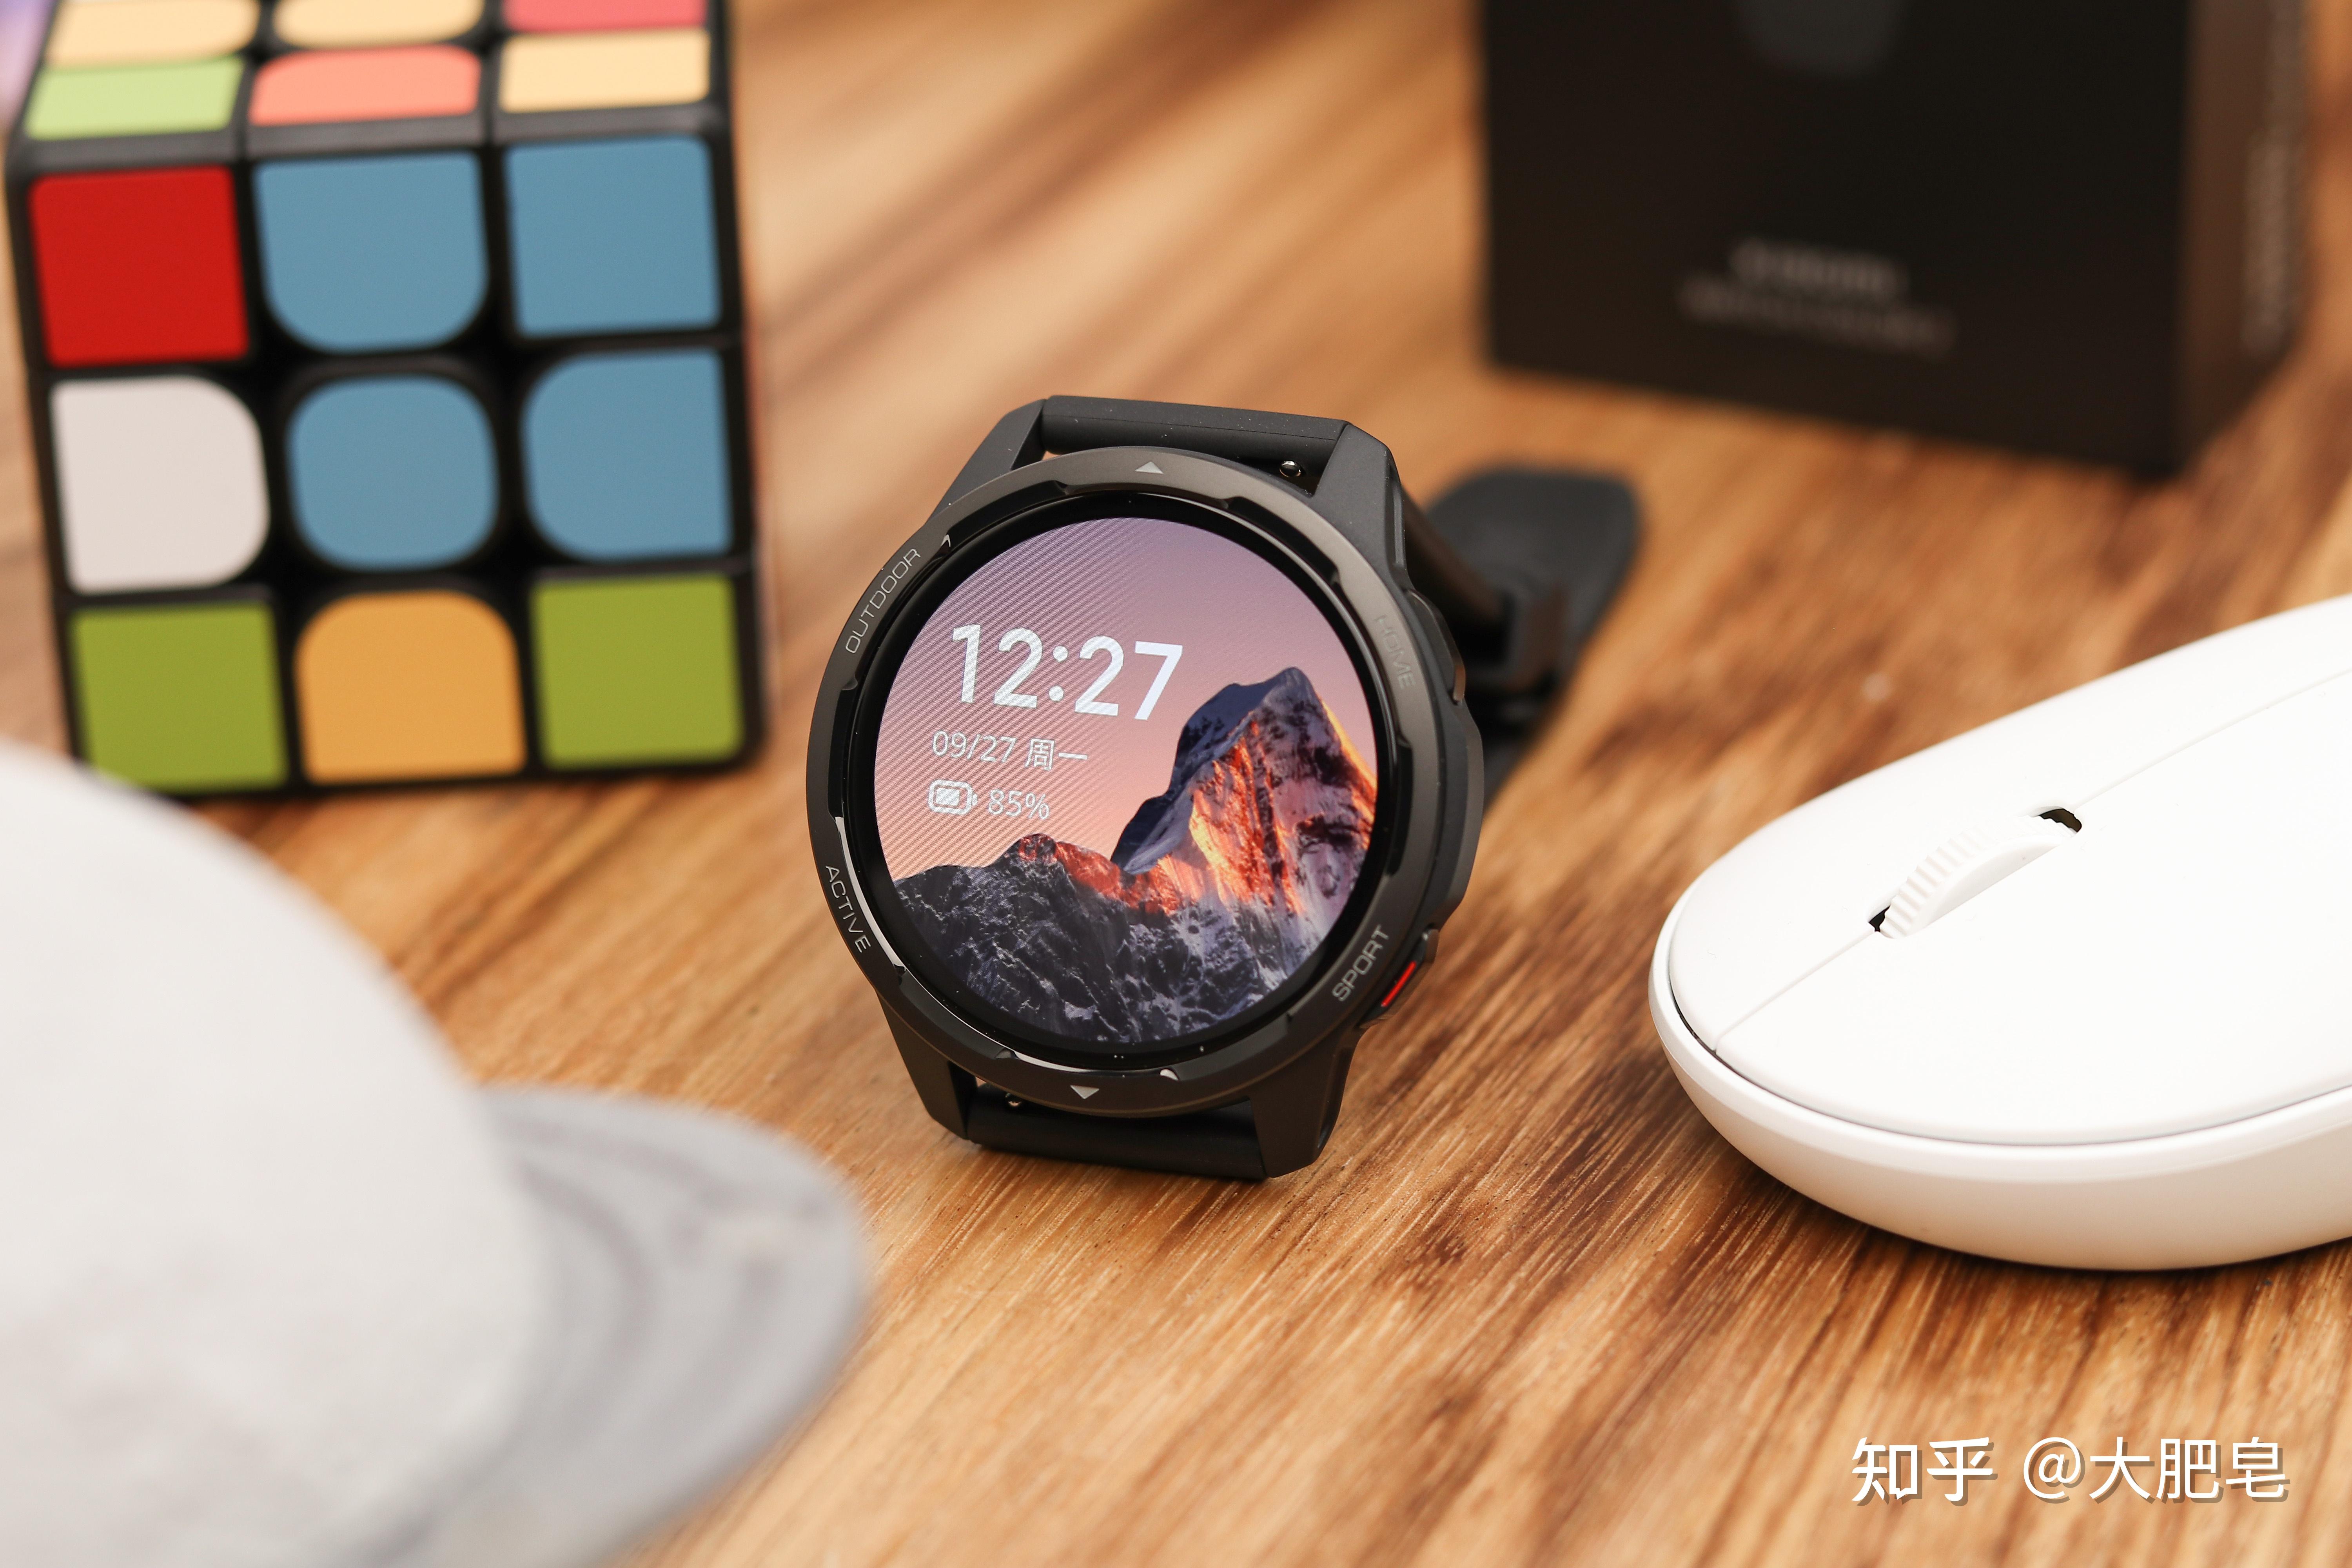 如何评价 9 月 27 日小米推出的 watch color 2 智能手表,有哪些亮点